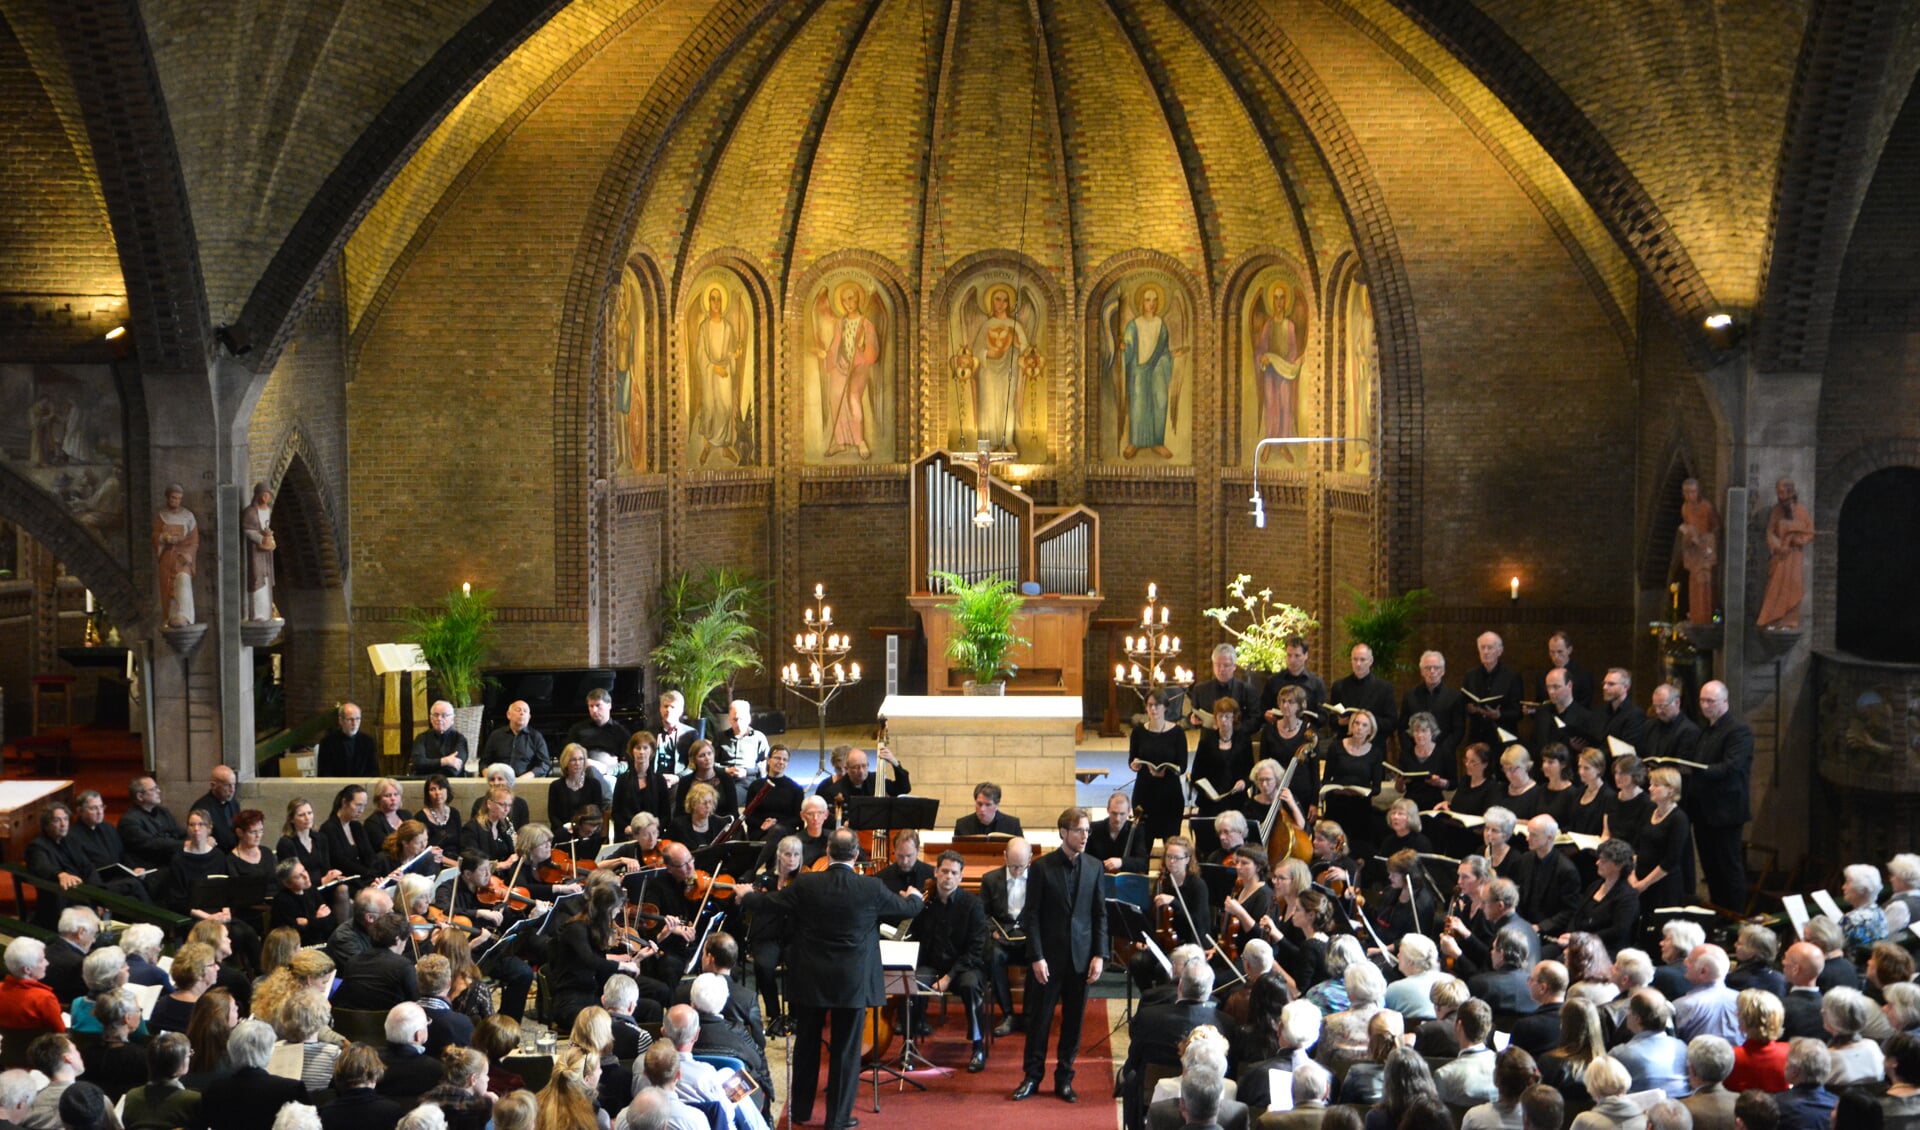 De uitvoering door het Dudokensemble in de OLV-kerk in Bilthoven was het absolute muzikale hoogtepunt van het Biltse culturele seizoen.